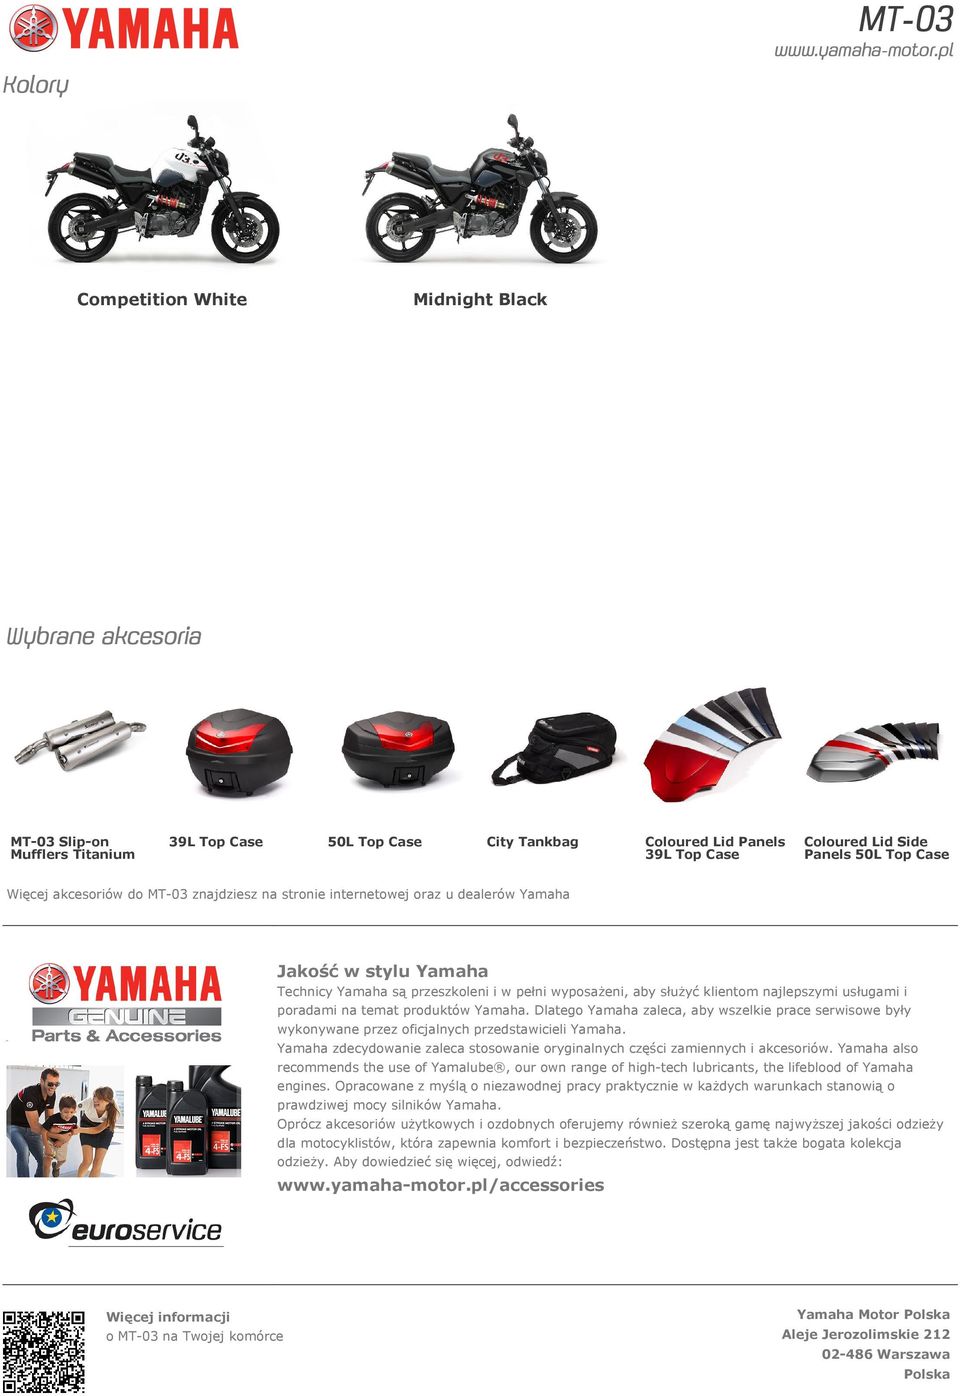 usługami i poradami na temat produktów Yamaha. Dlatego Yamaha zaleca, aby wszelkie prace serwisowe były wykonywane przez oficjalnych przedstawicieli Yamaha.